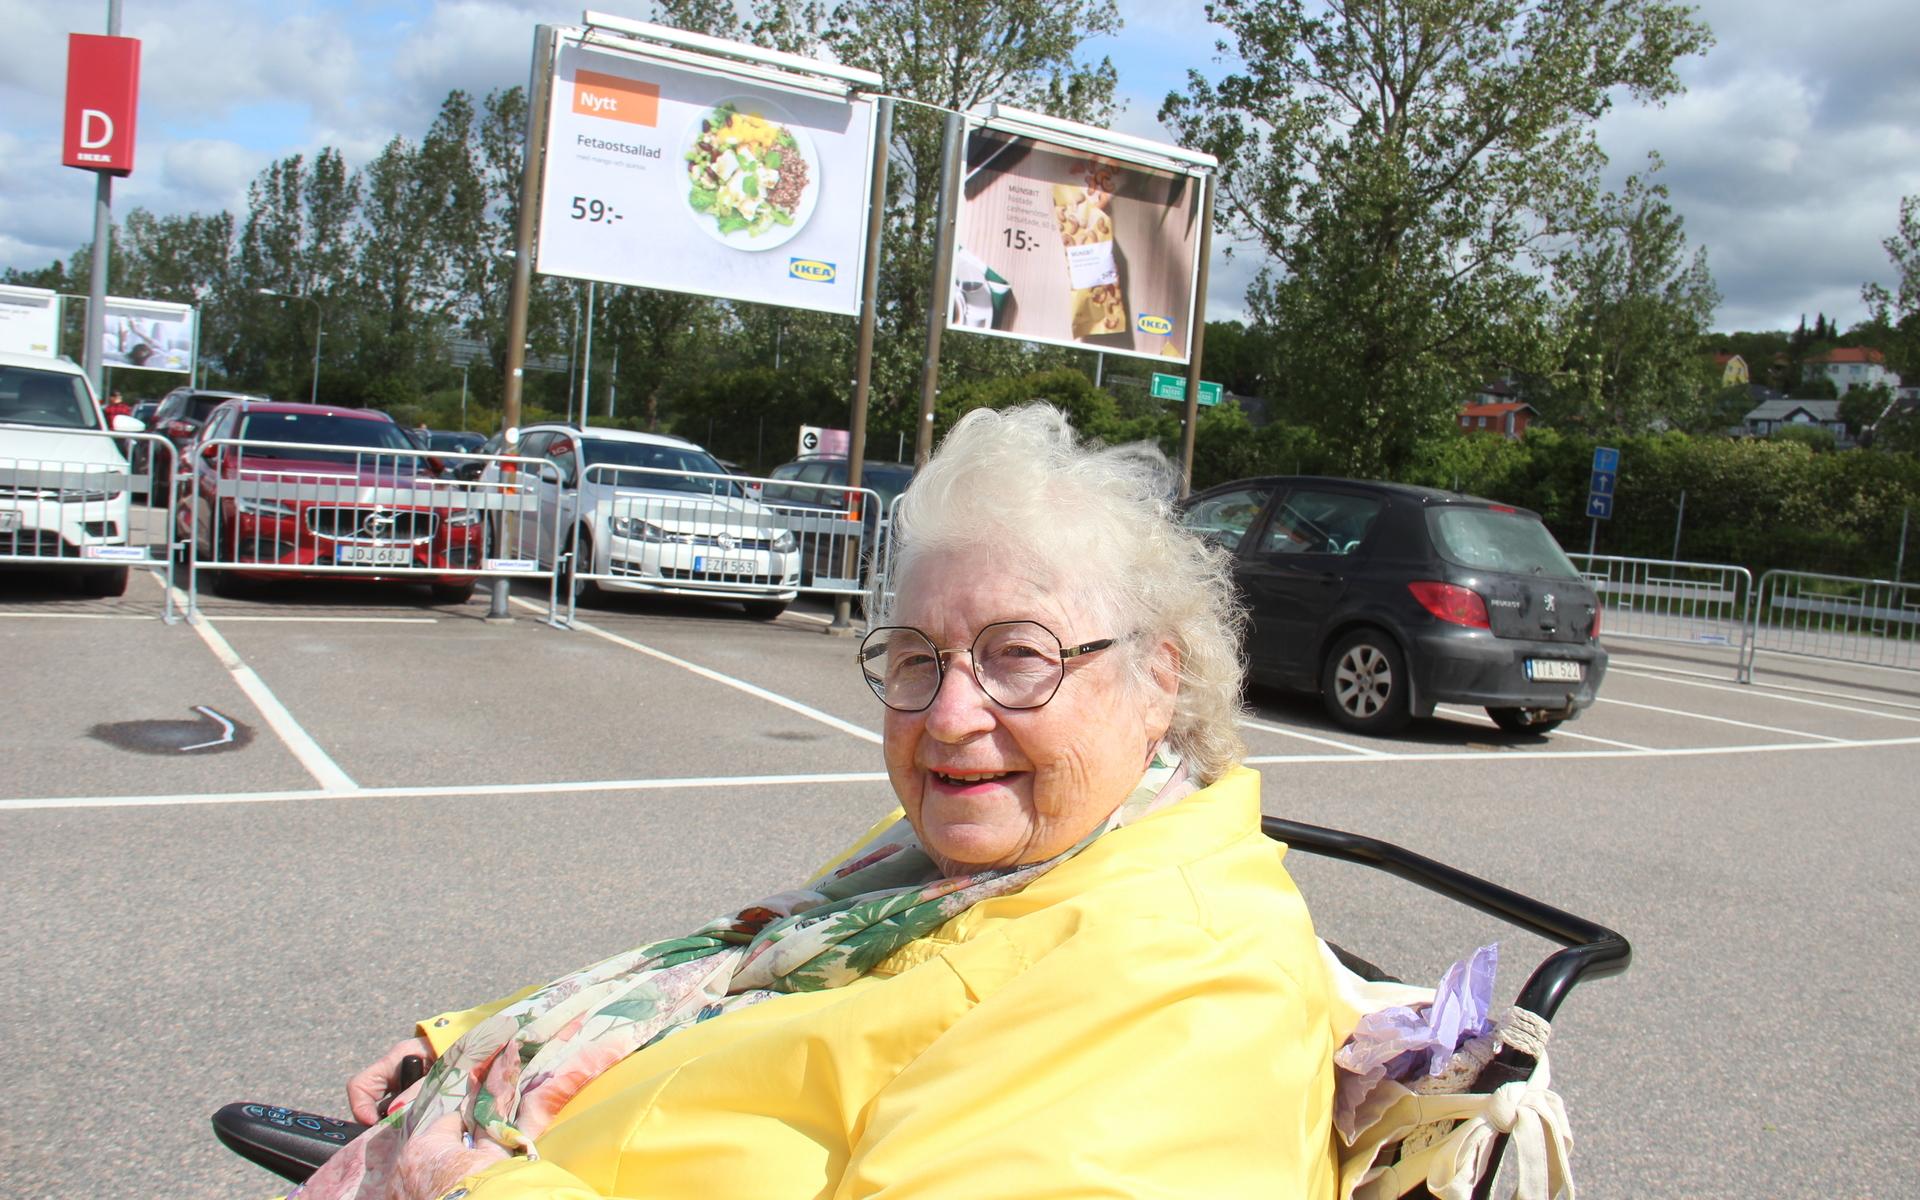 ”När man blir gammal har man så mycket grejer så jag behöver inget mer. Jag passade bara på att titta lite innan jag går på Ikea”, säger 86 år gamla Margareta Bengtsson.